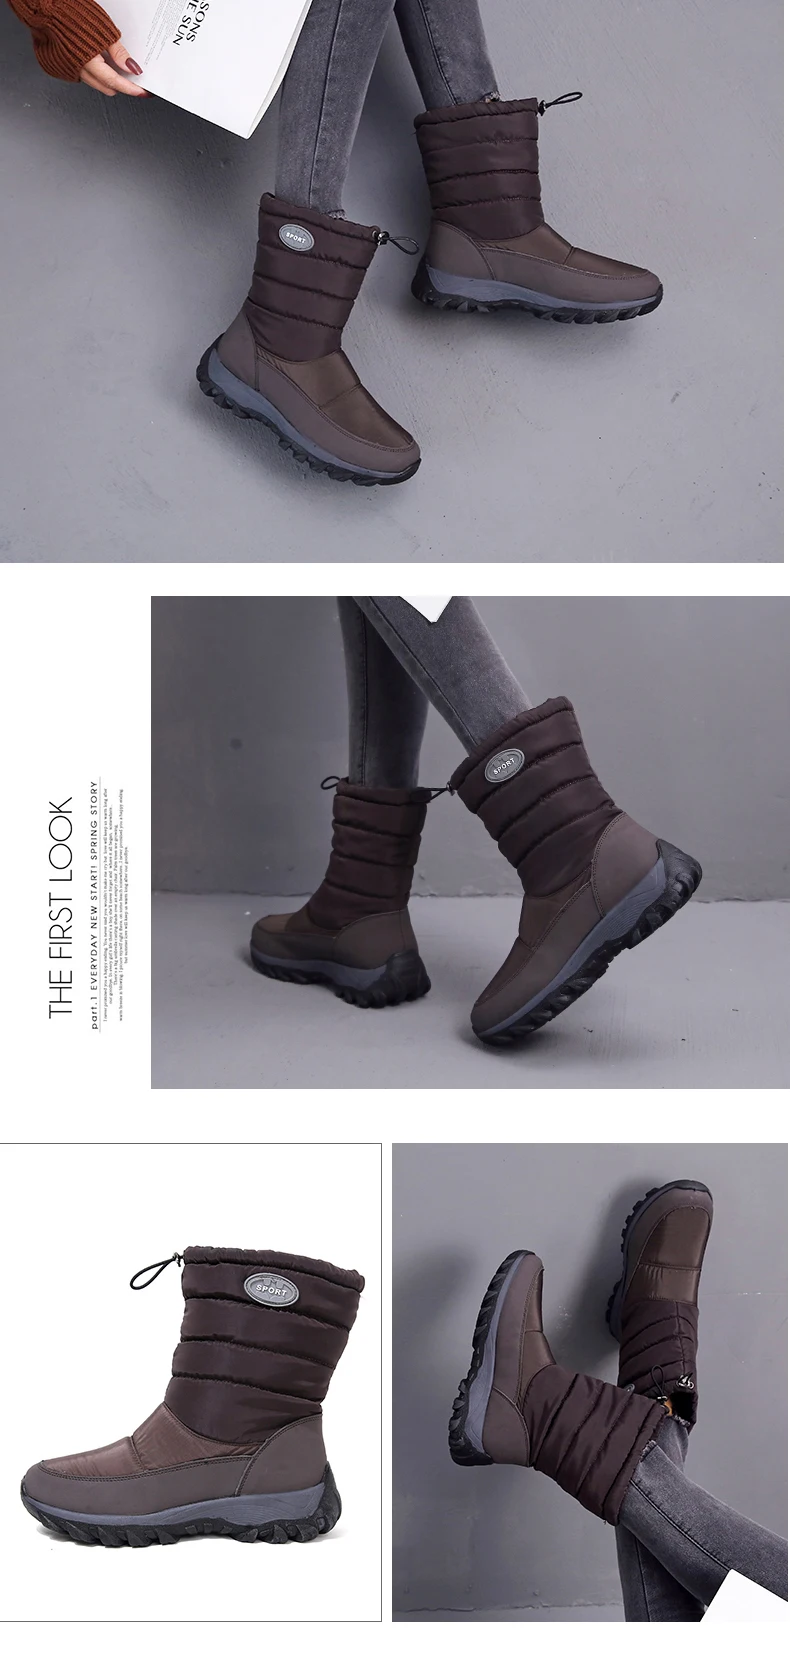 Fujin/зимние сапоги; водонепроницаемые сапоги на платформе 6 см; зимняя обувь из плюша с теплым мехом внутри; ботинки на молнии; женские зимние сапоги; ботинки